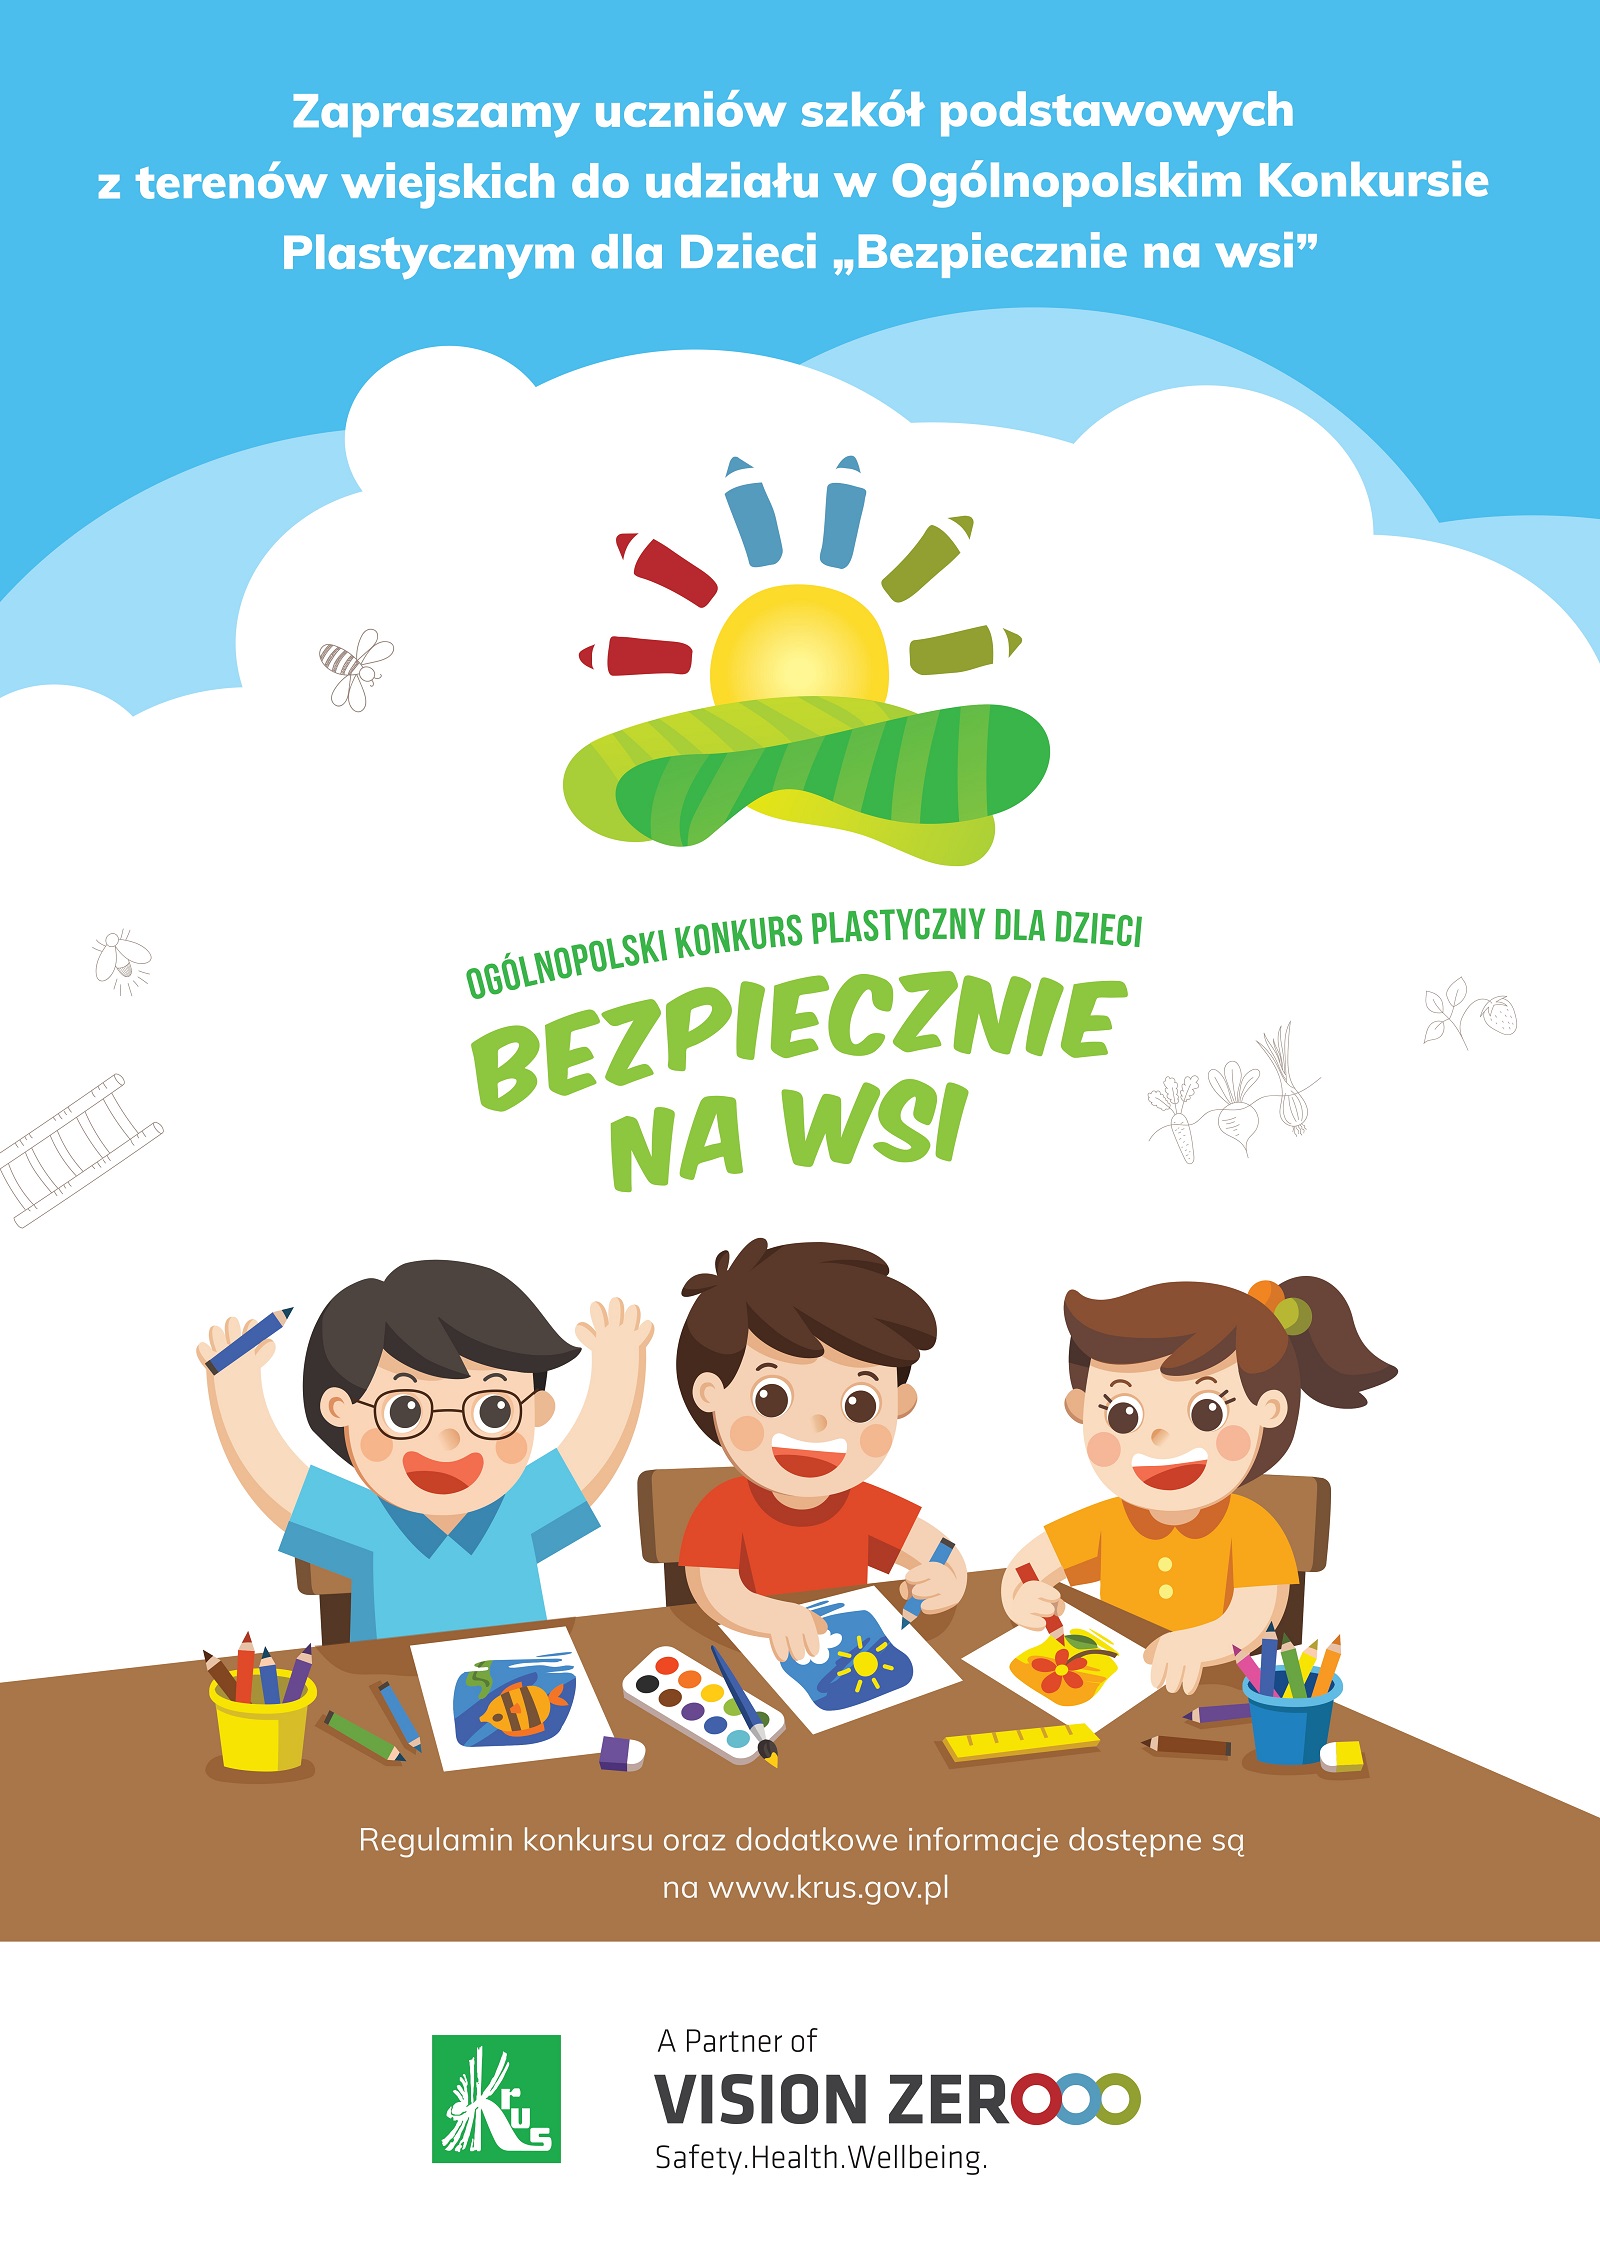 Konkurs Plastyczny dla Dzieci pod hasłem „Bezpiecznie na wsi mamy – od 30 lat z KRUS wypadkom zapobiegamy”